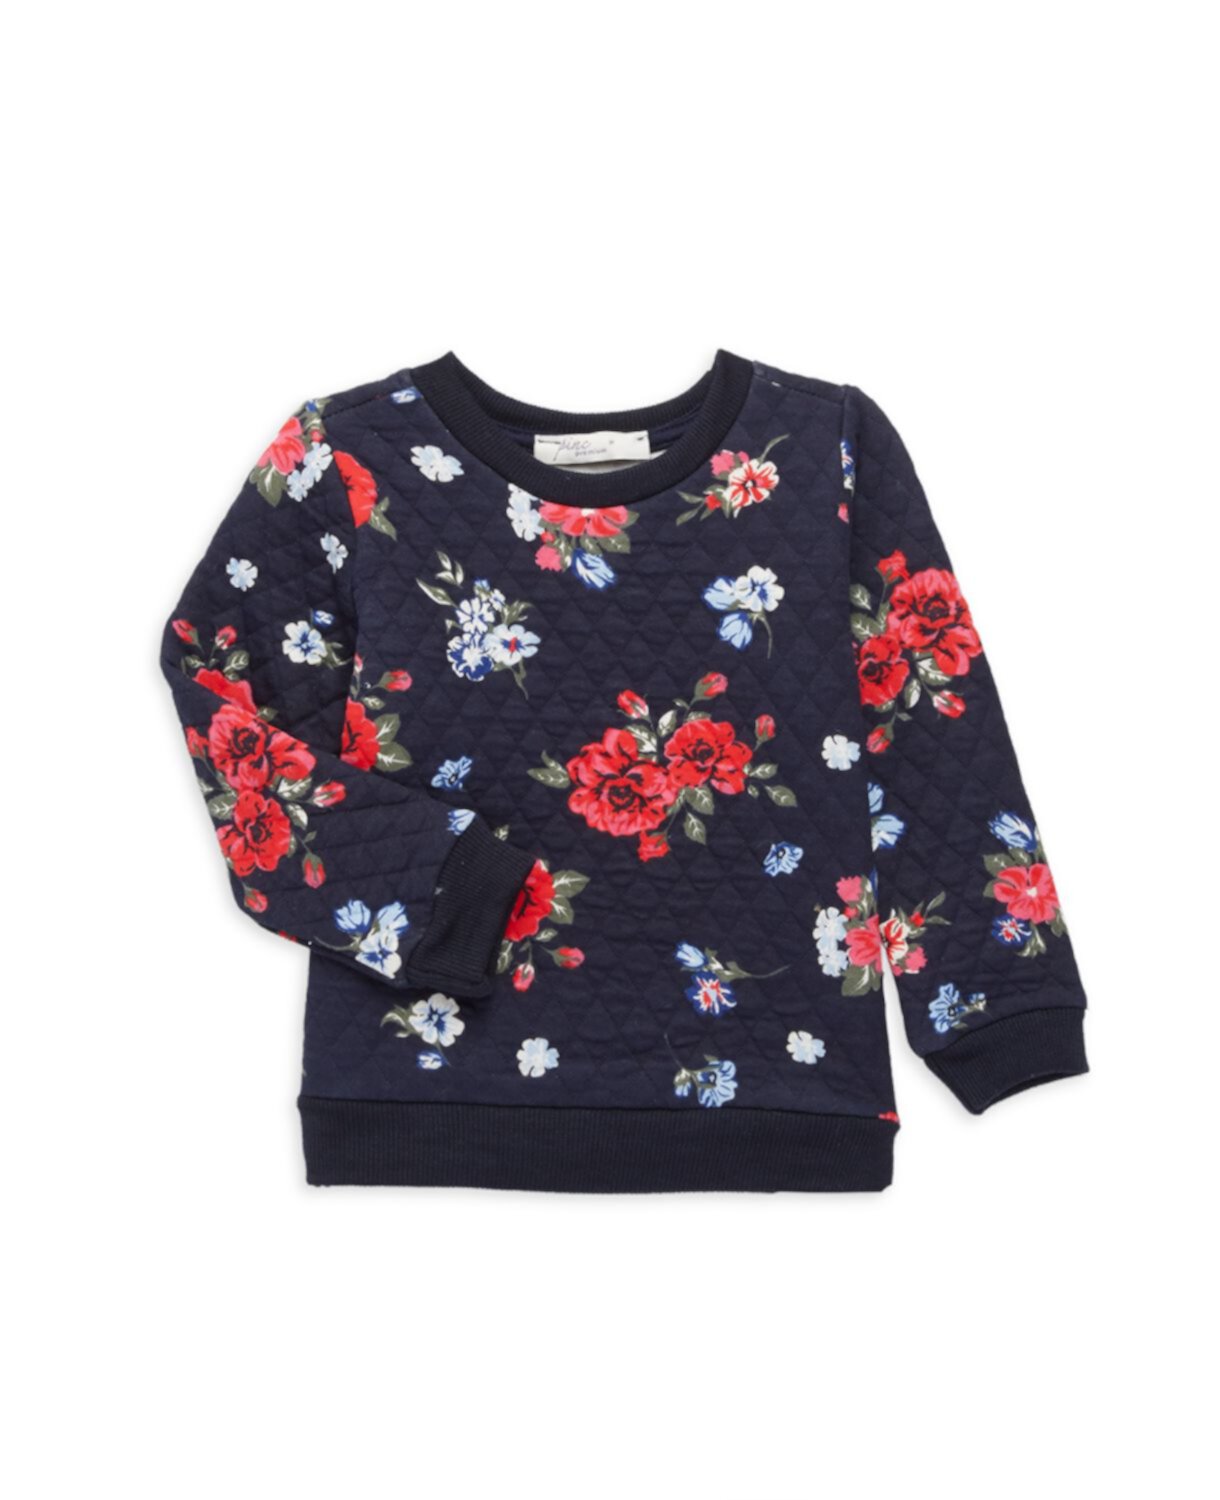 Стеганый свитер с цветочным принтом для маленькой девочки Pinc Premium